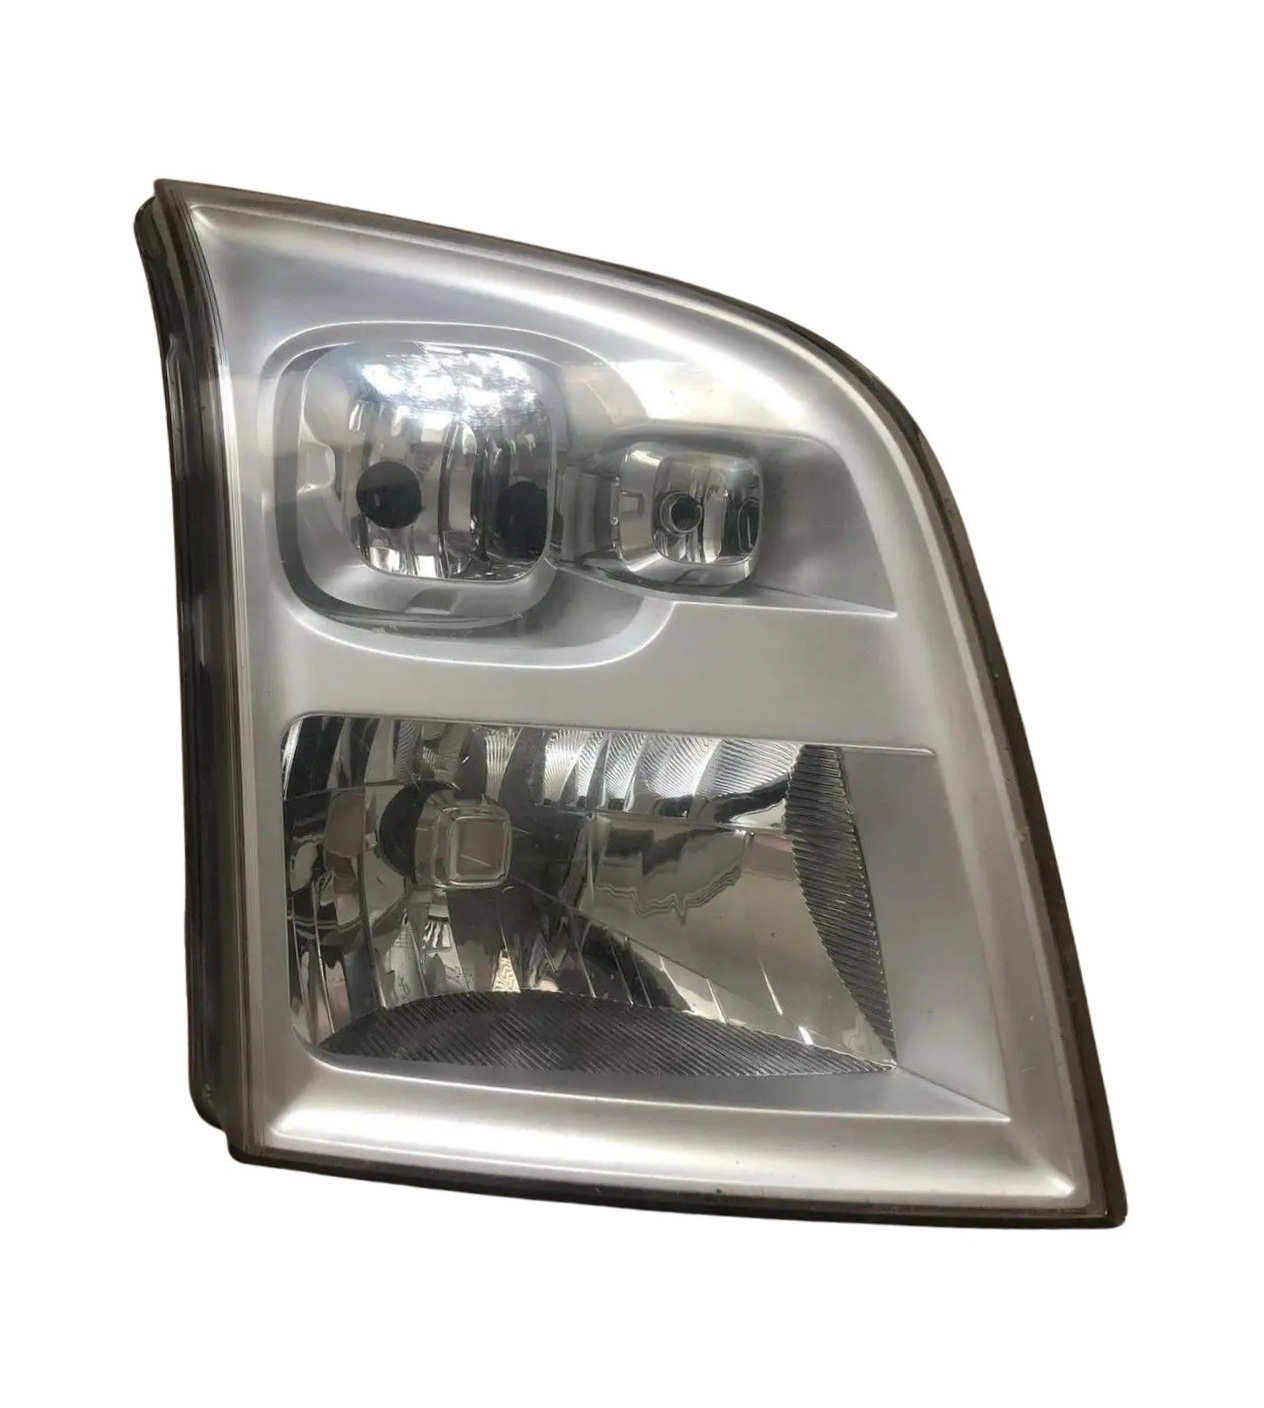 Ford Transit 2006-2014 V347 Headlights Headlamp Front Lights Left Manual Regulation